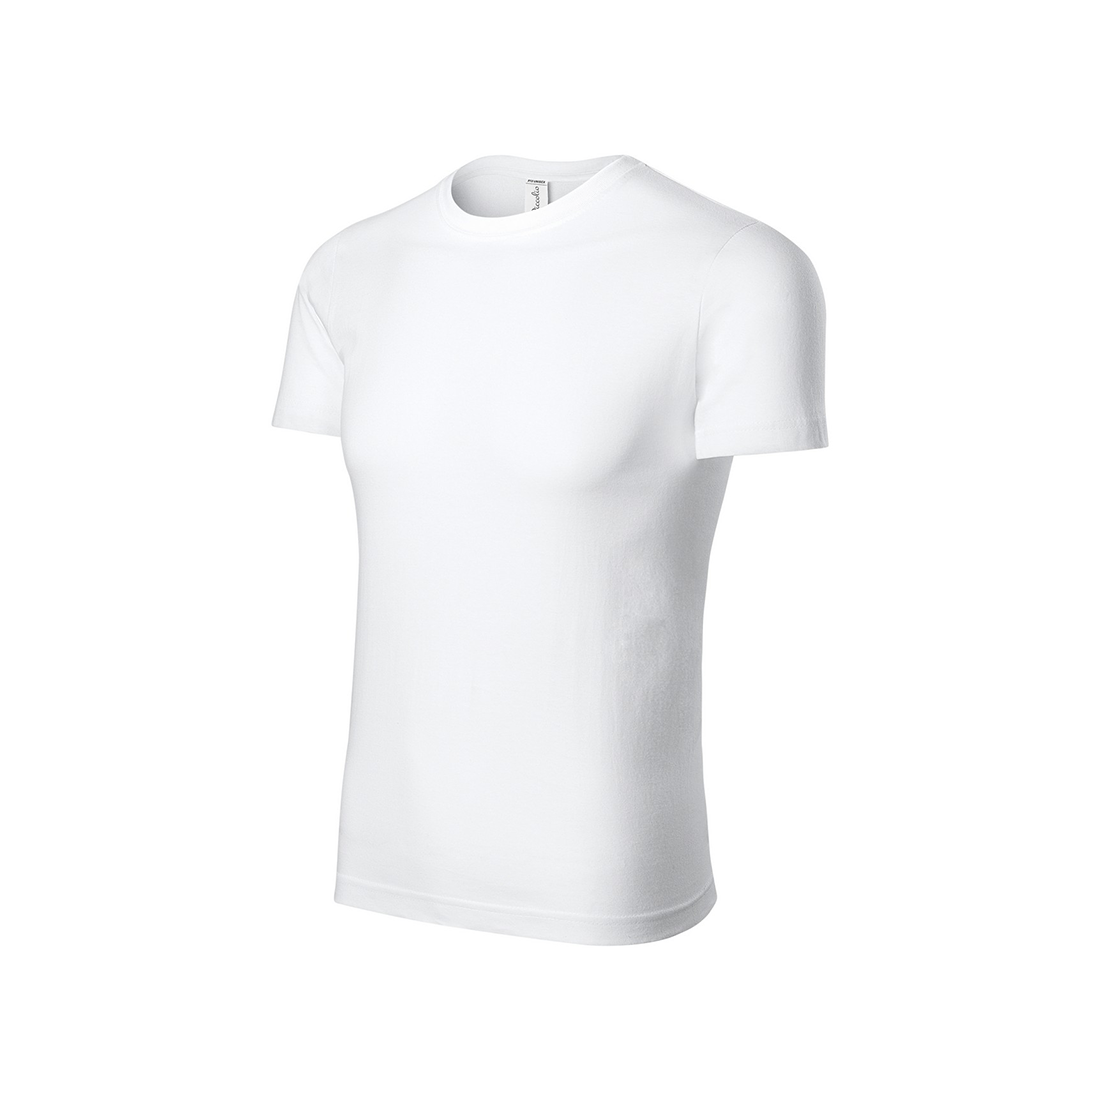 T-shirt en coton pour enfants - Les vêtements de protection